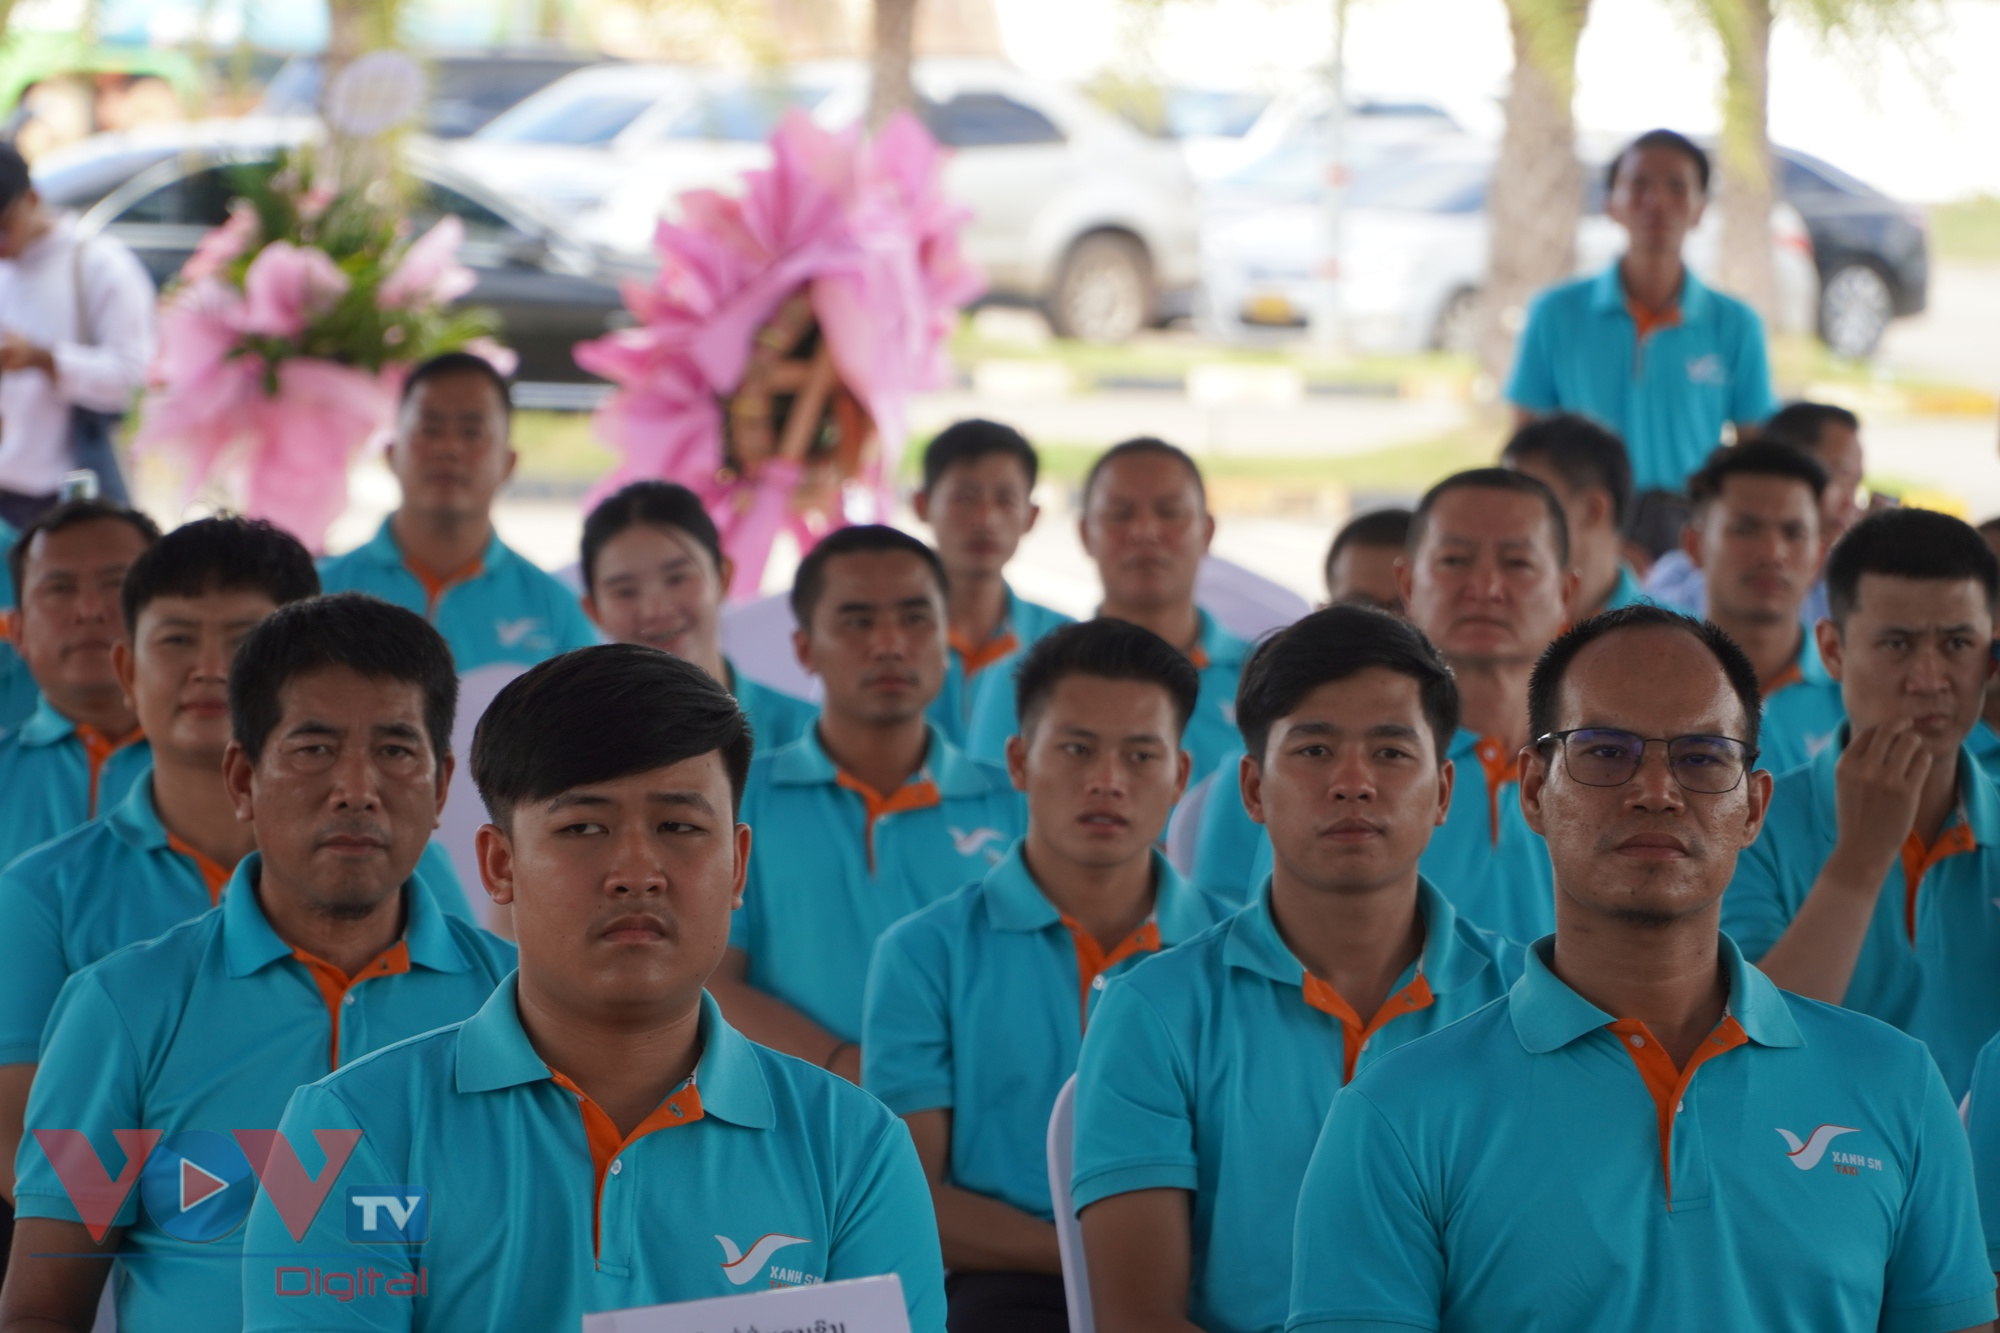 Dịch vụ taxi Xanh SM của Việt Nam chính thức khai trương tại Lào - Ảnh 5.